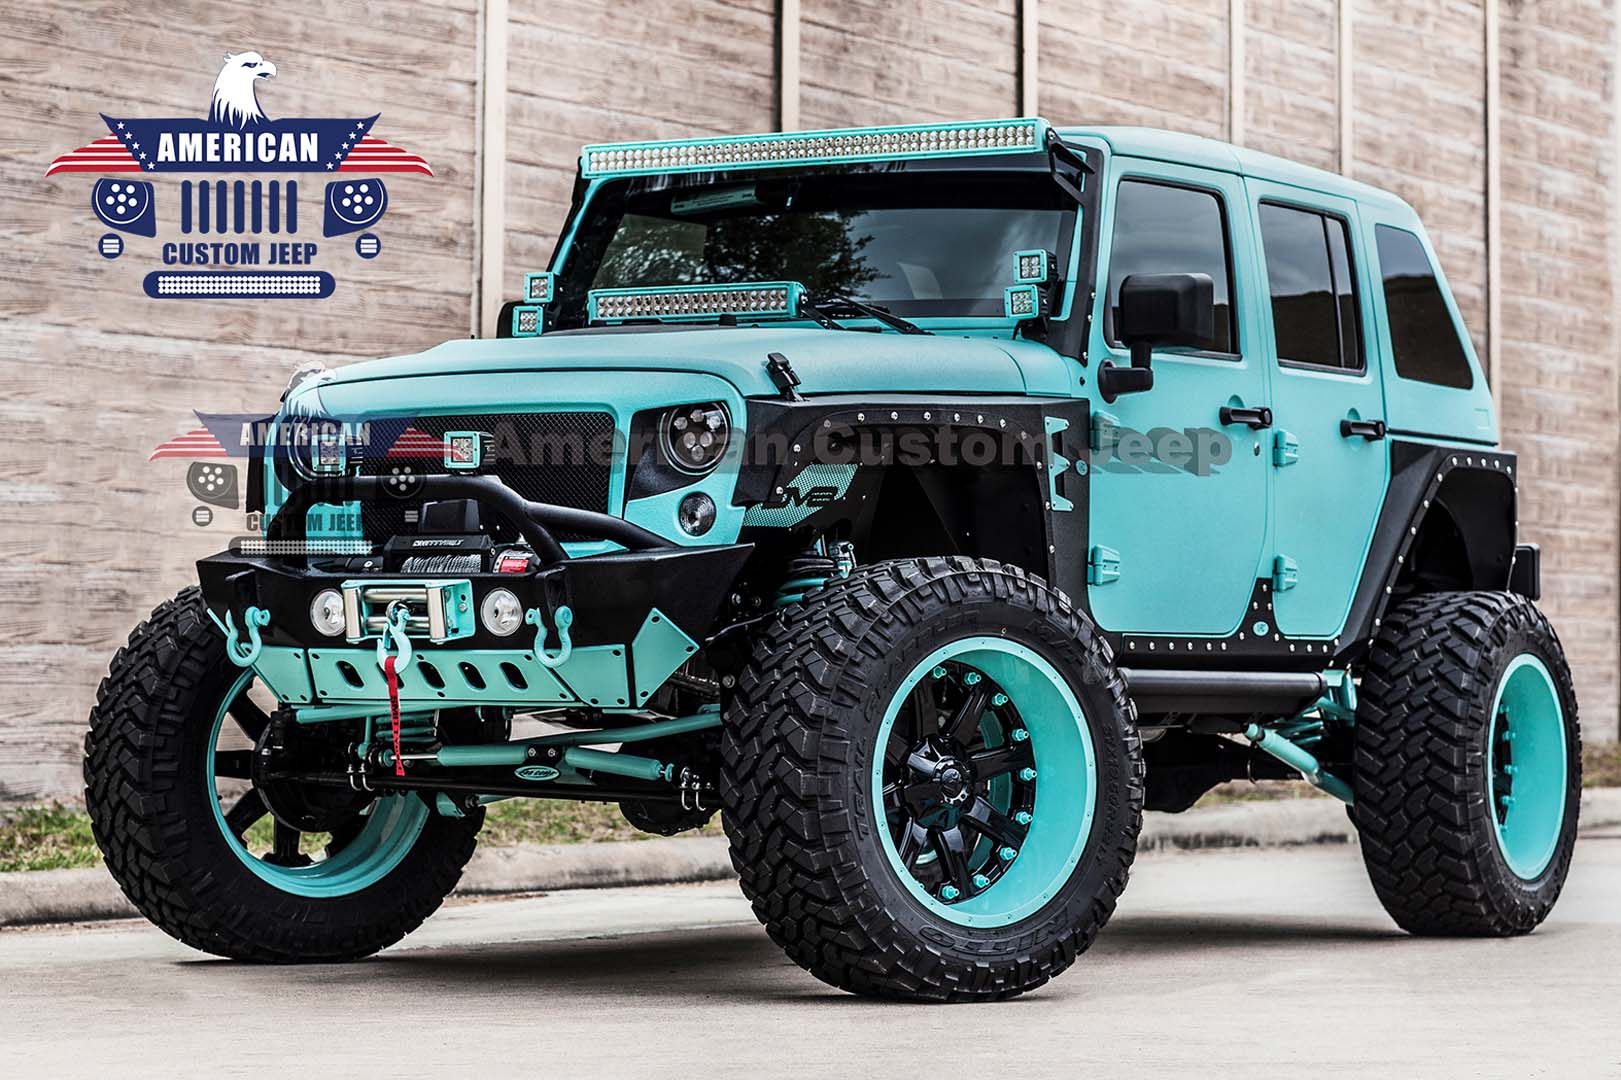 Tiffany Blue Kevlar Edition - Houston, TX - American Custom Jeep